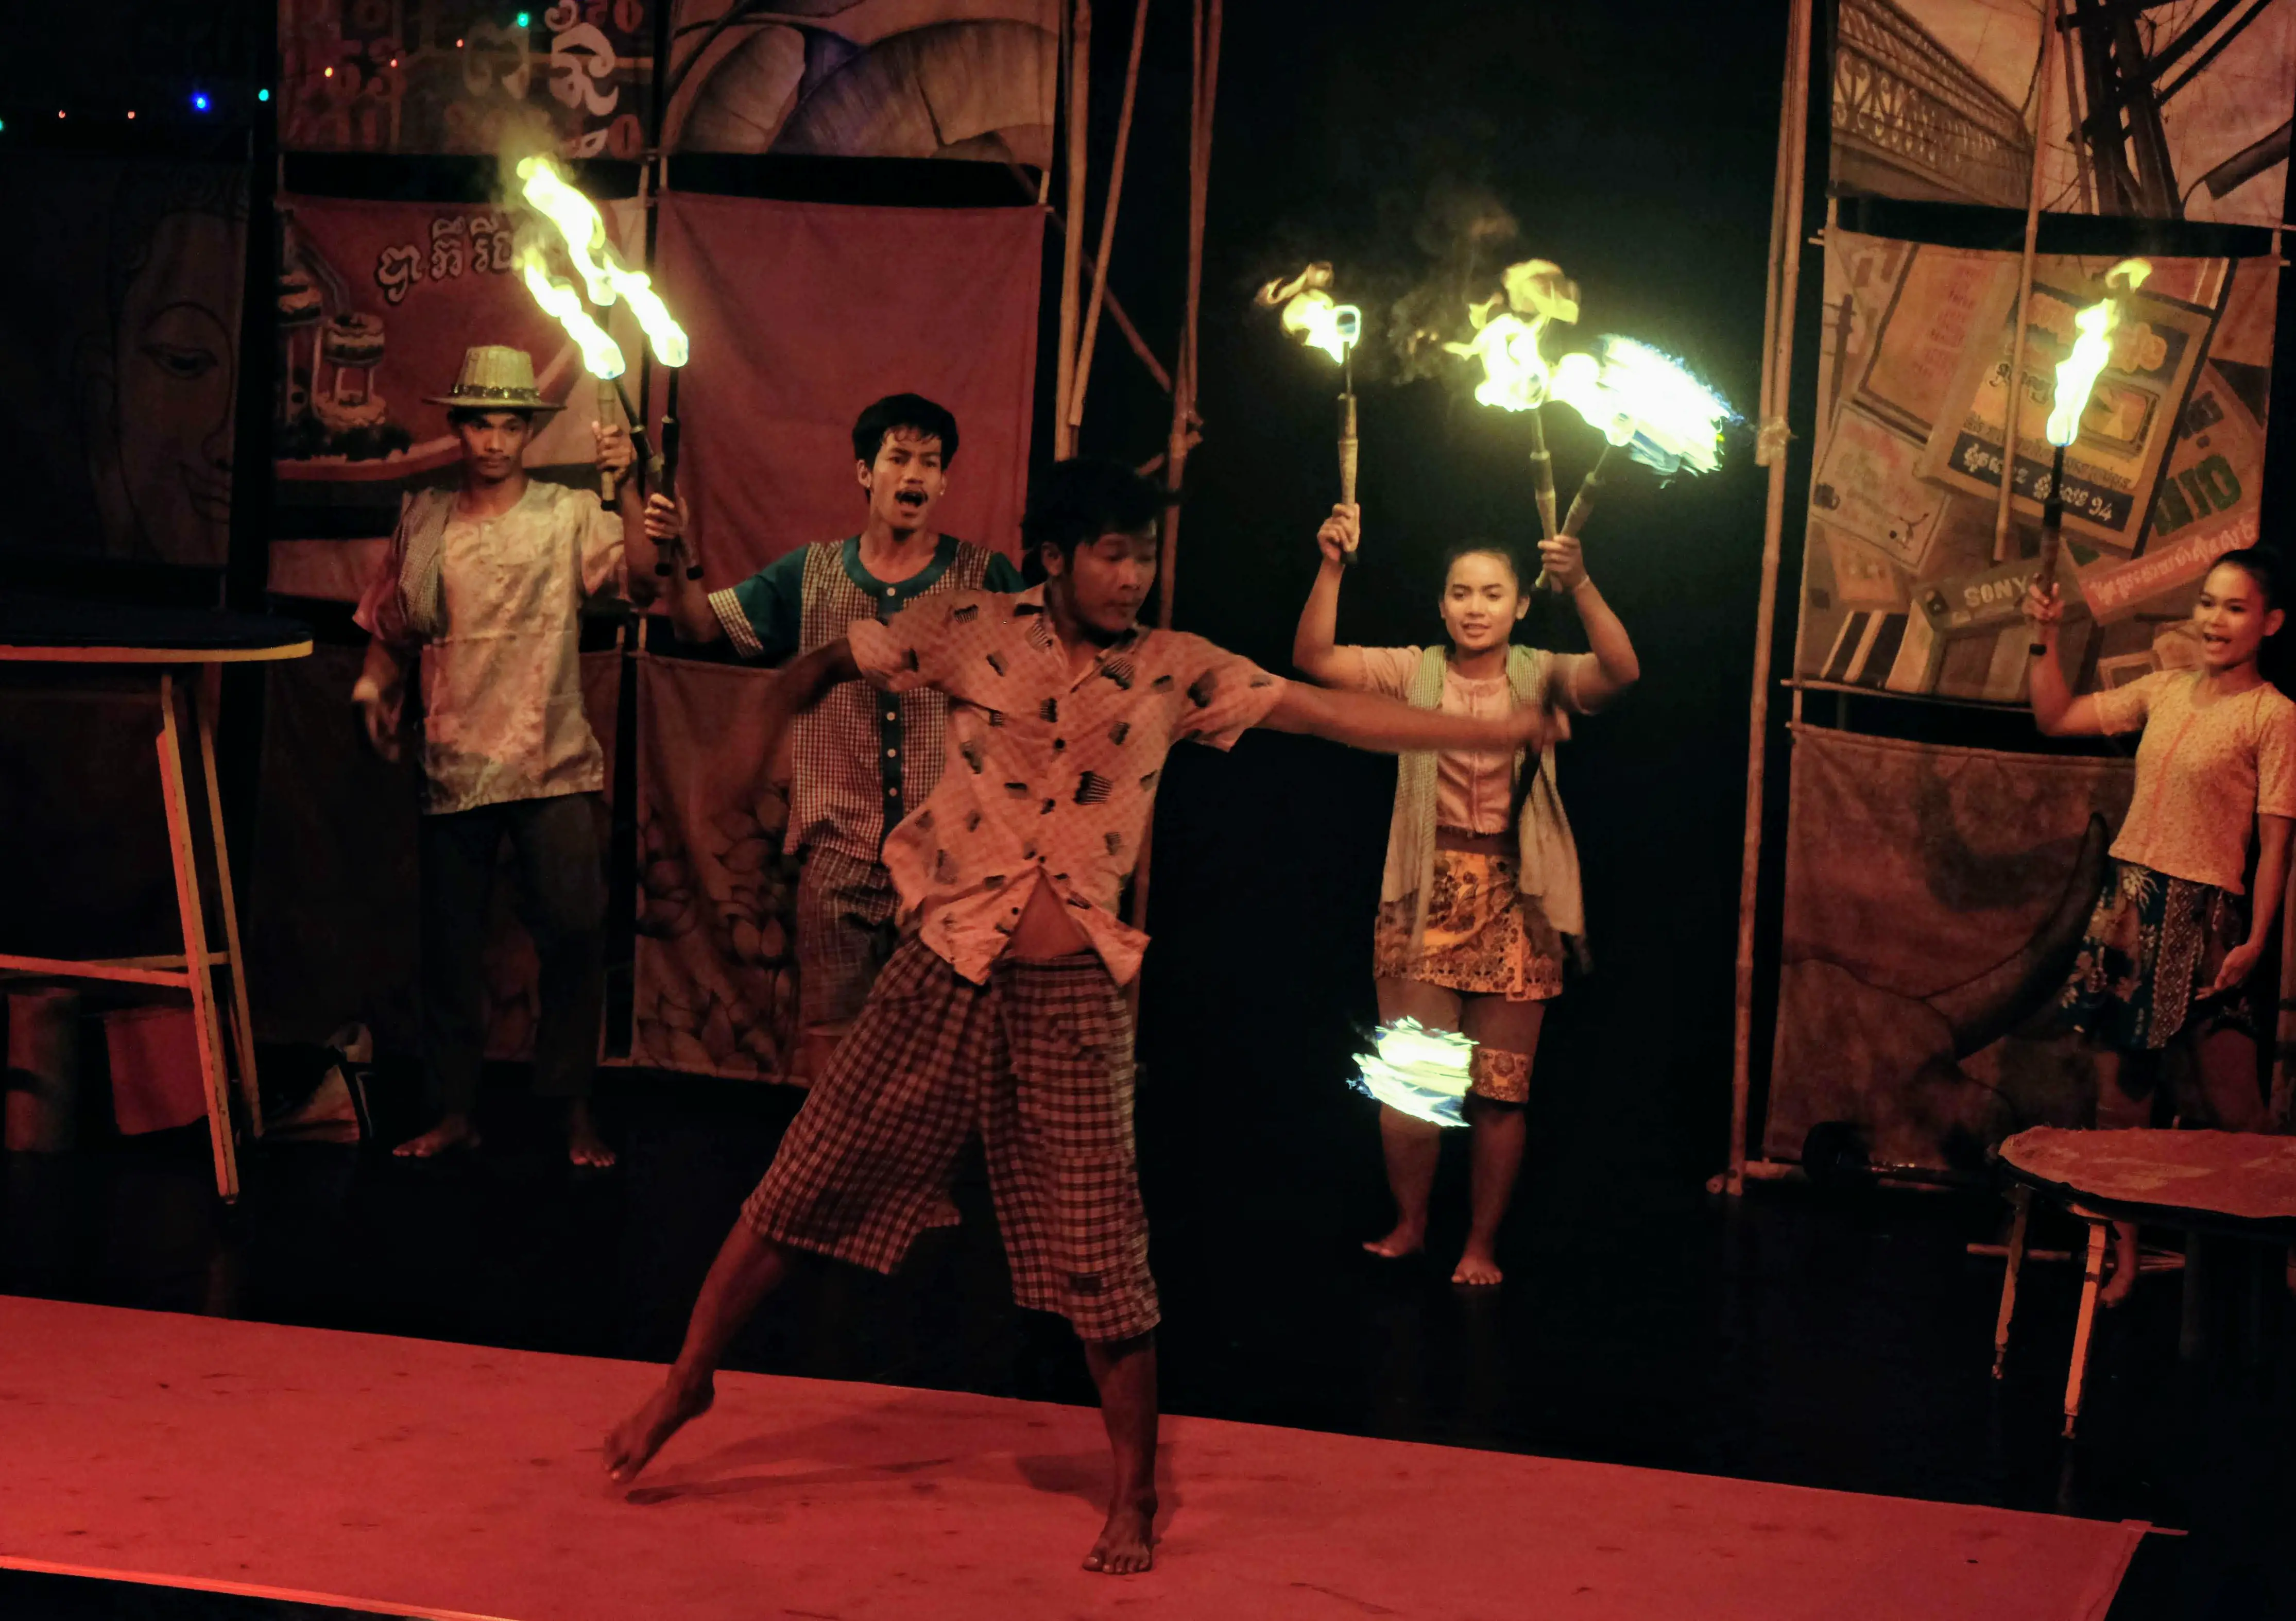 Pyro performer at Phare Circus, Battambang, Cambodia